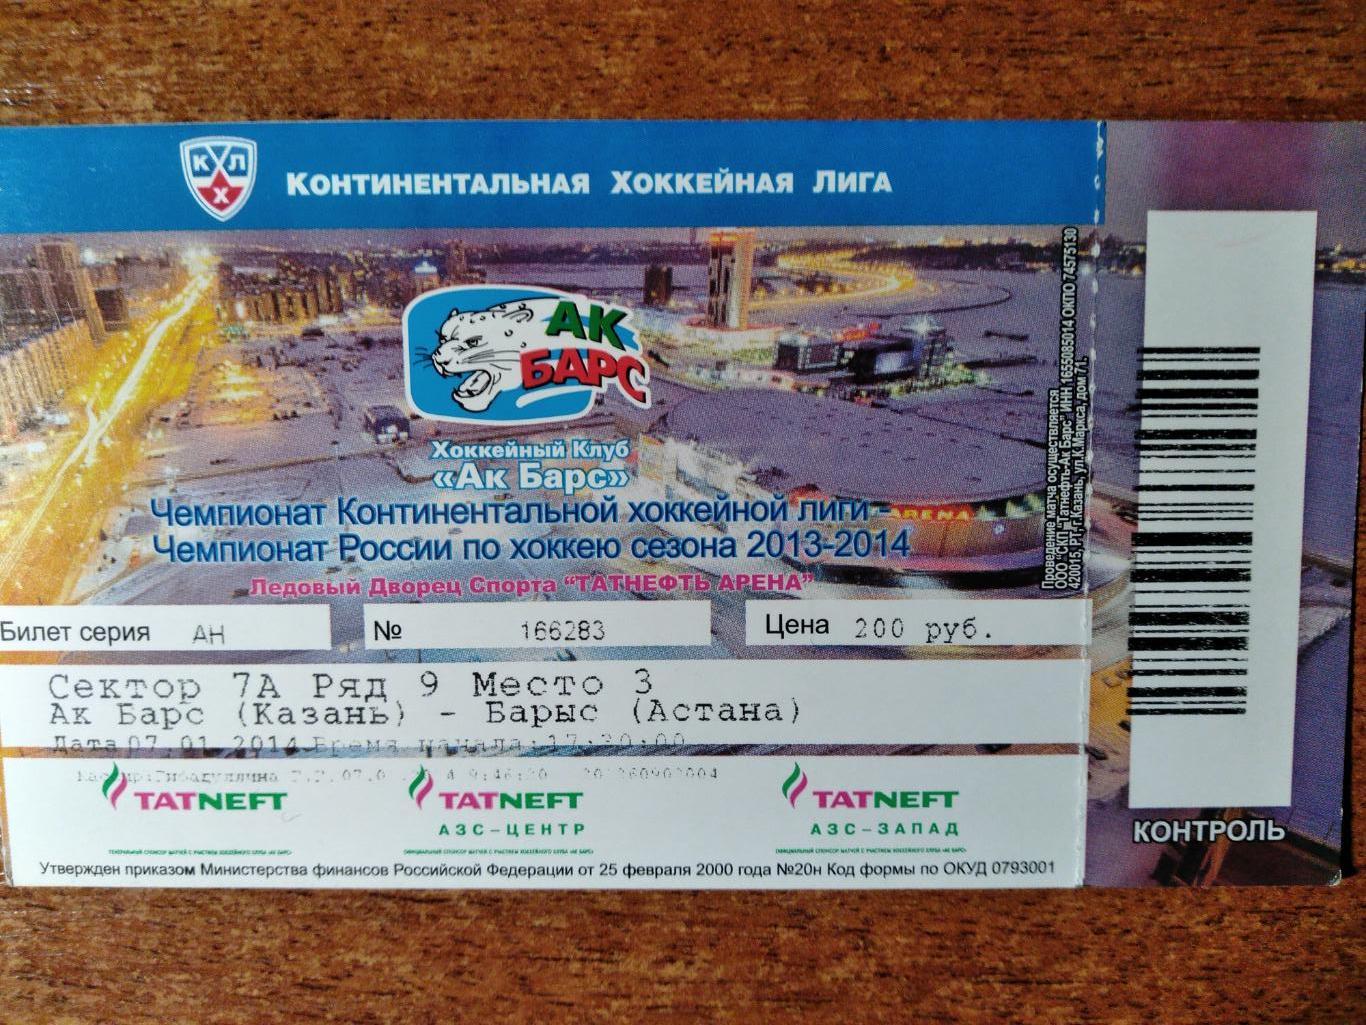 Билет на матч Чемпионата КХЛ 2013/14 ХК Ак Барс(Казань)-Барыс(Астана )